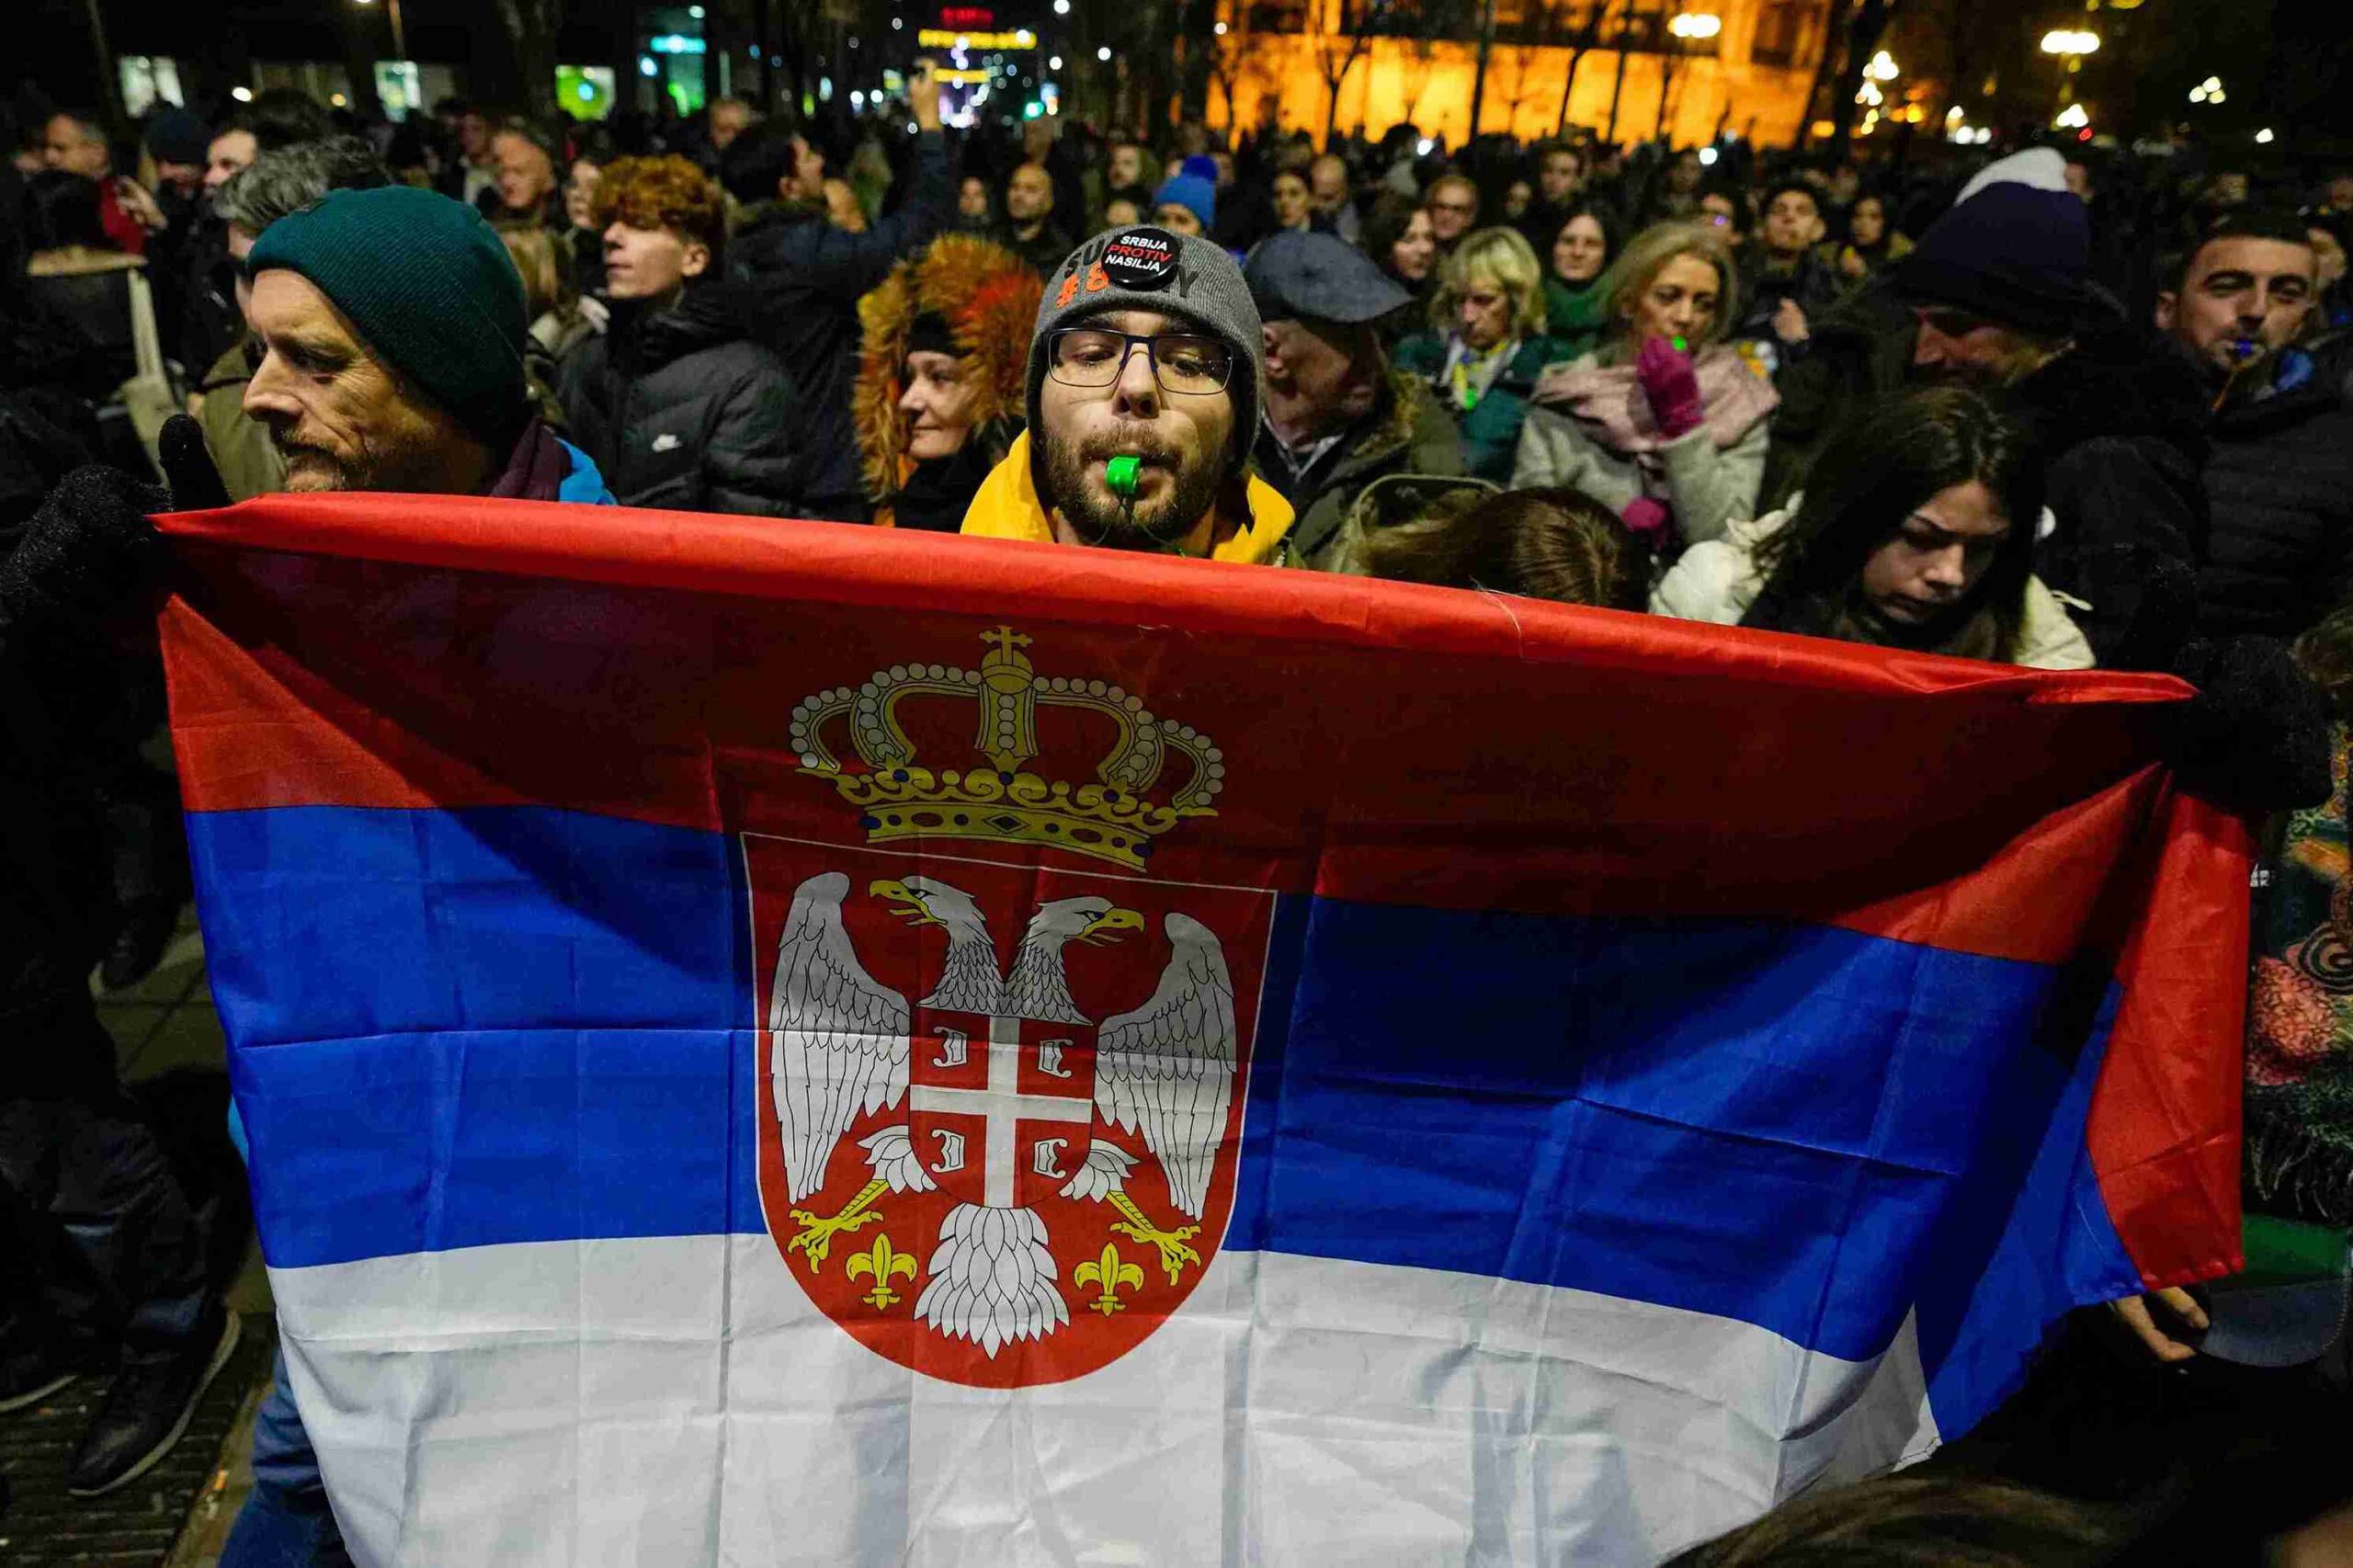 Skup koalicije „Srbija protiv nasilja“ ispred RIK-a: Traže poništenje izbora